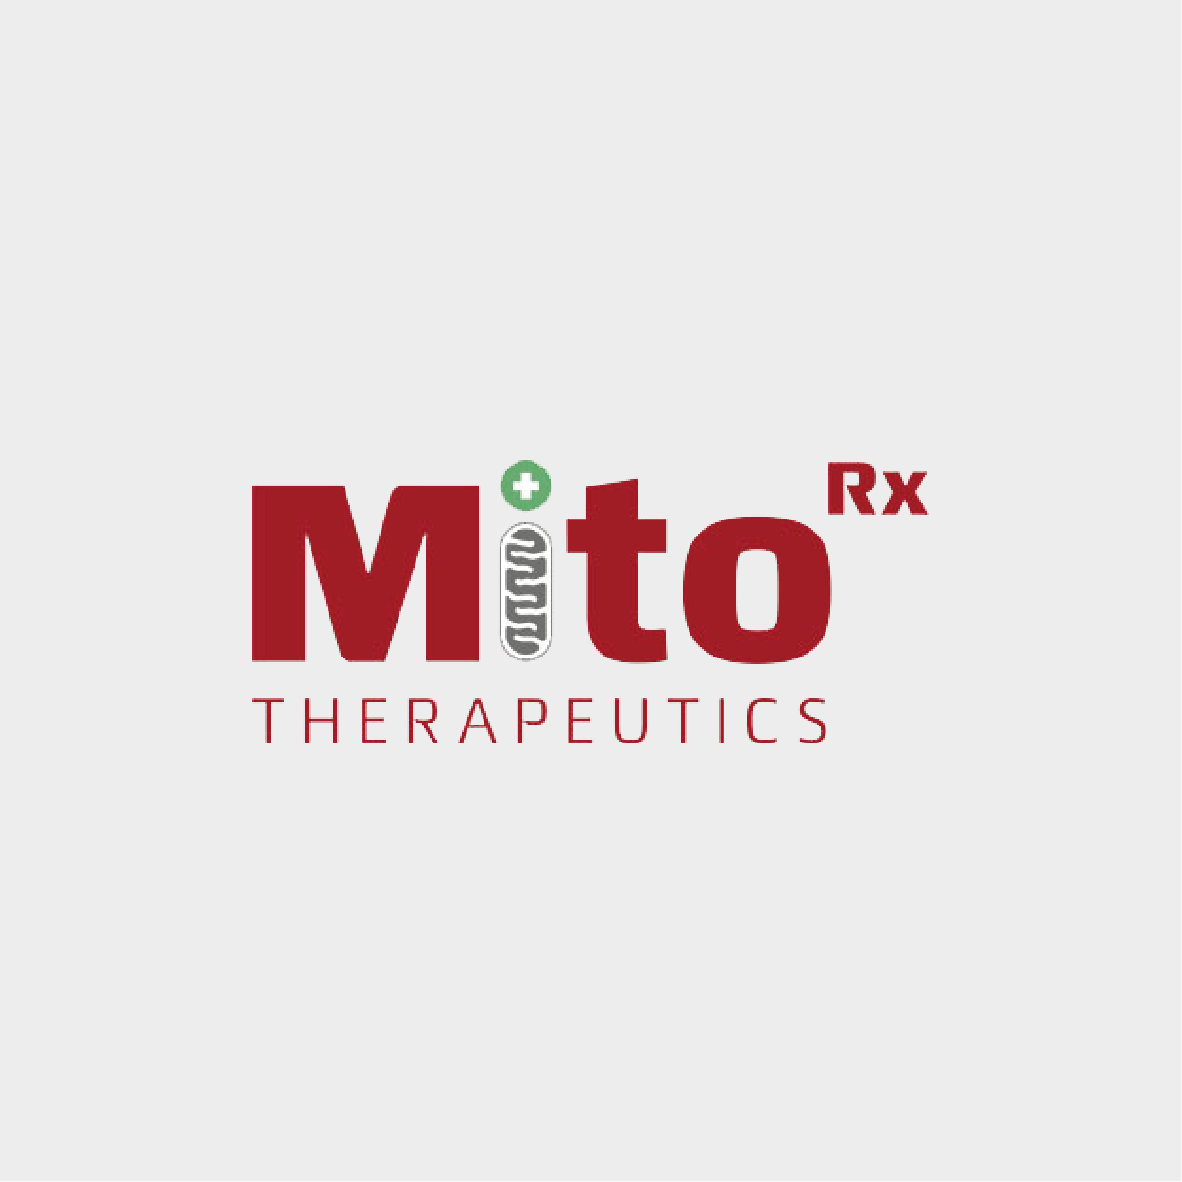 MitoRx Therapeutics Pre-Seed